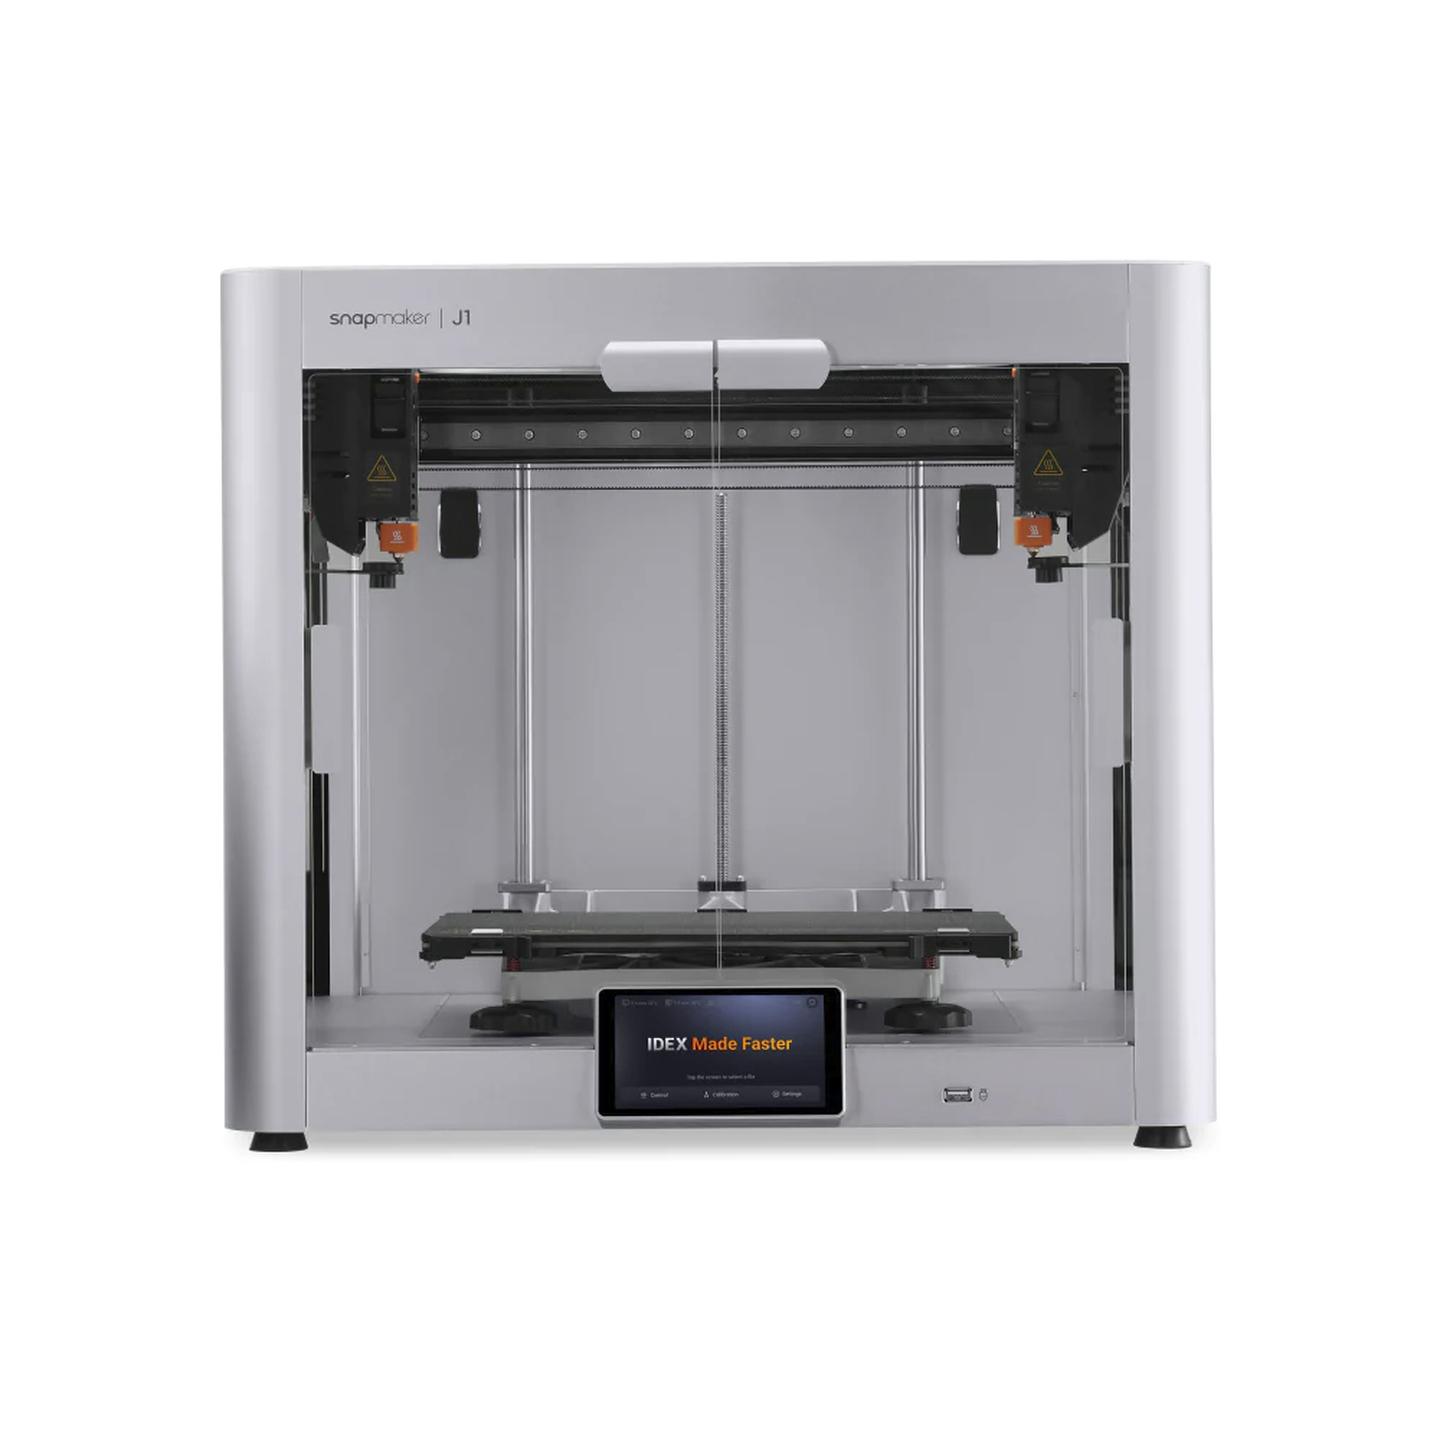 Snapmaker J1 Independent Dual Extruder 3D Printer